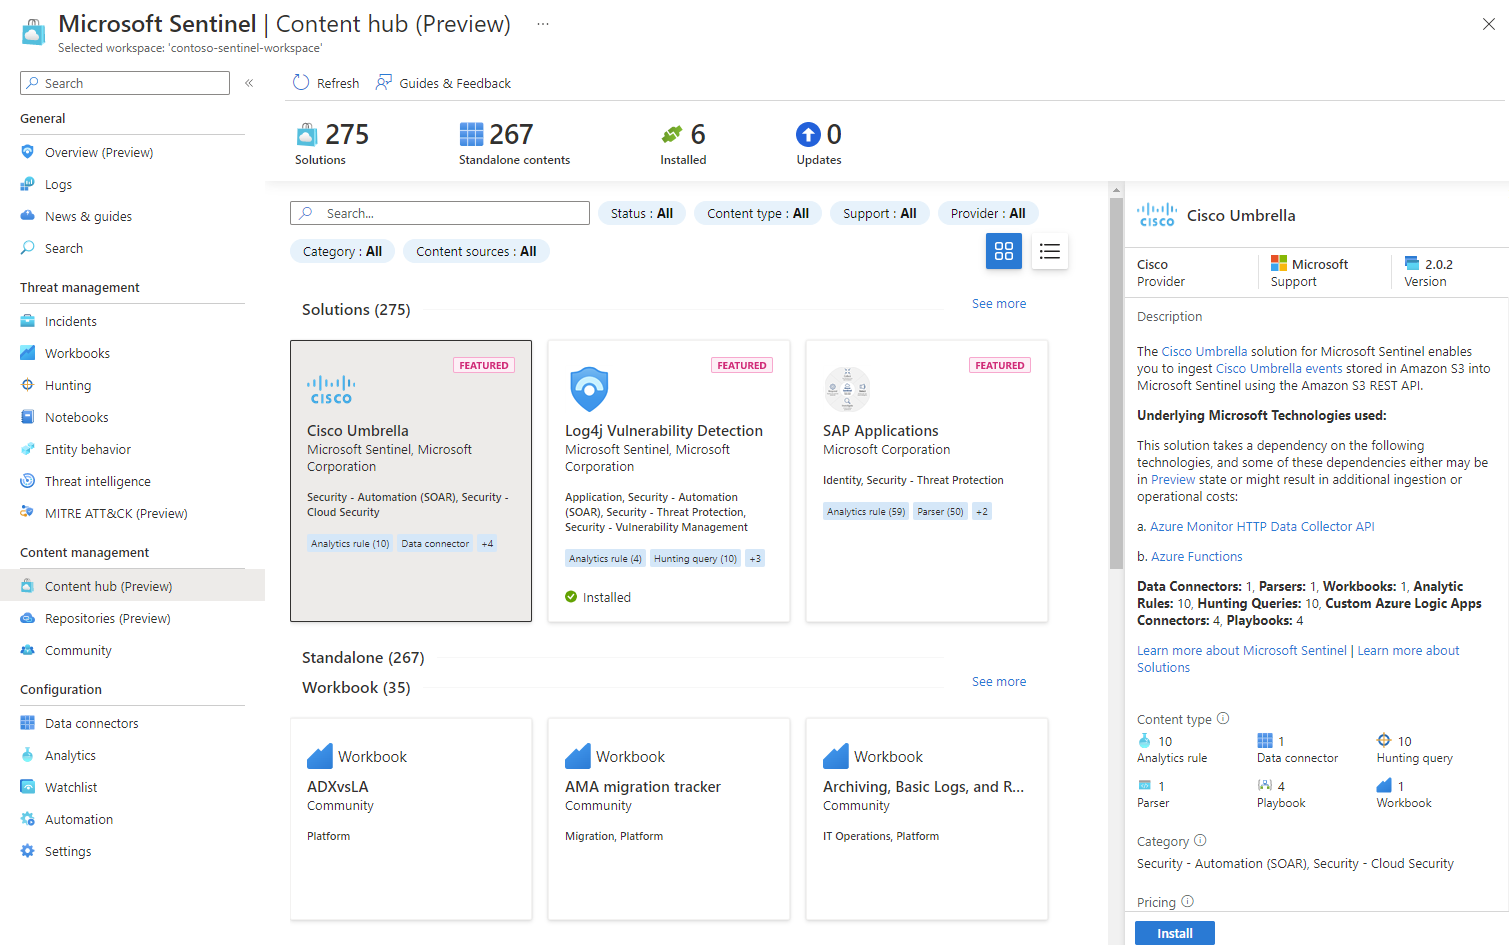 Captura de ecrã do hub de conteúdo do Microsoft Sentinel no portal do Azure.